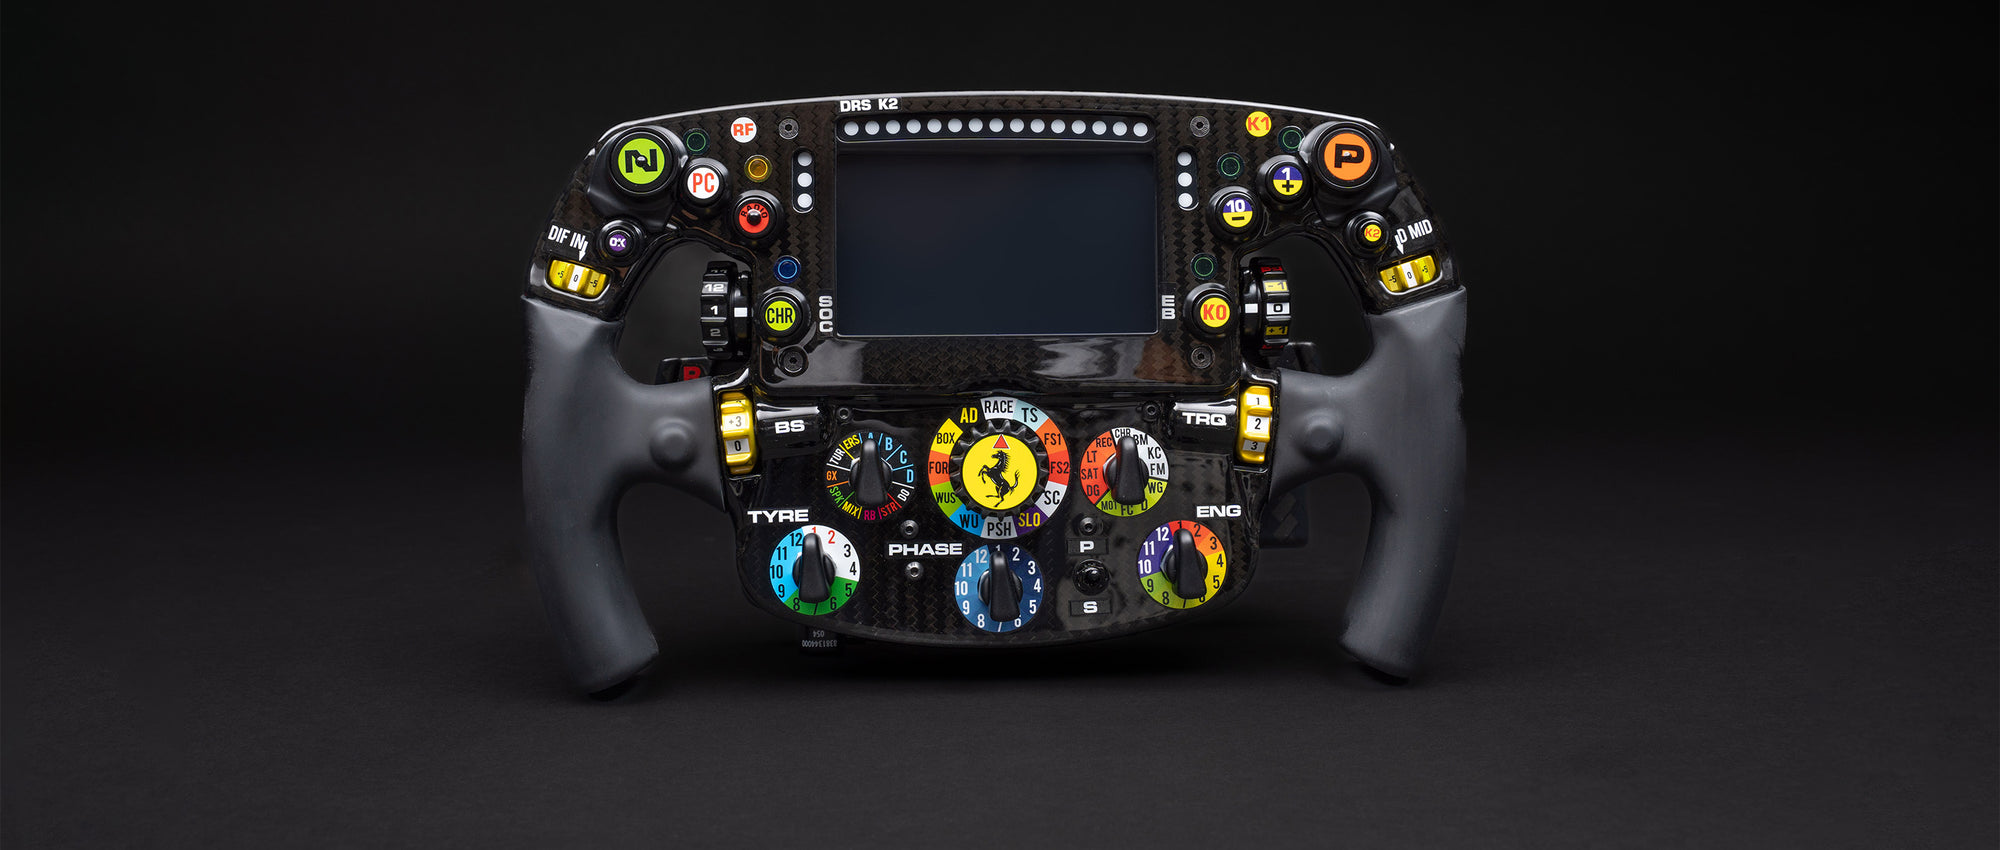 Amalgam lanza nuevos volantes de Fórmula 1 – Amalgam Collection